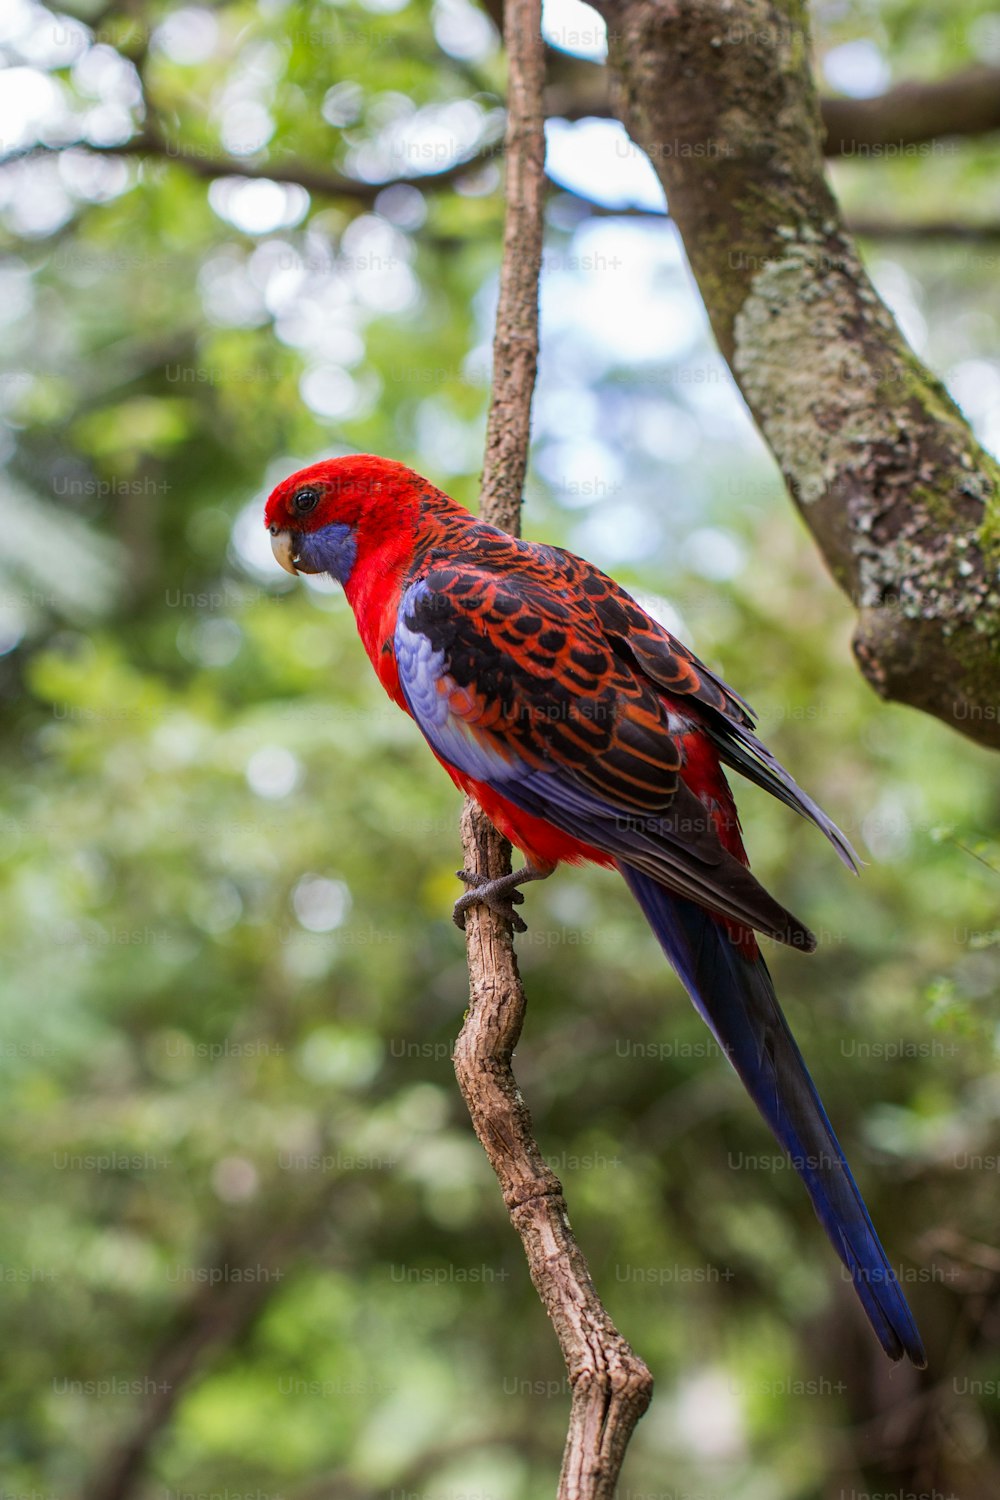 Un pájaro rojo y azul posado en la rama de un árbol